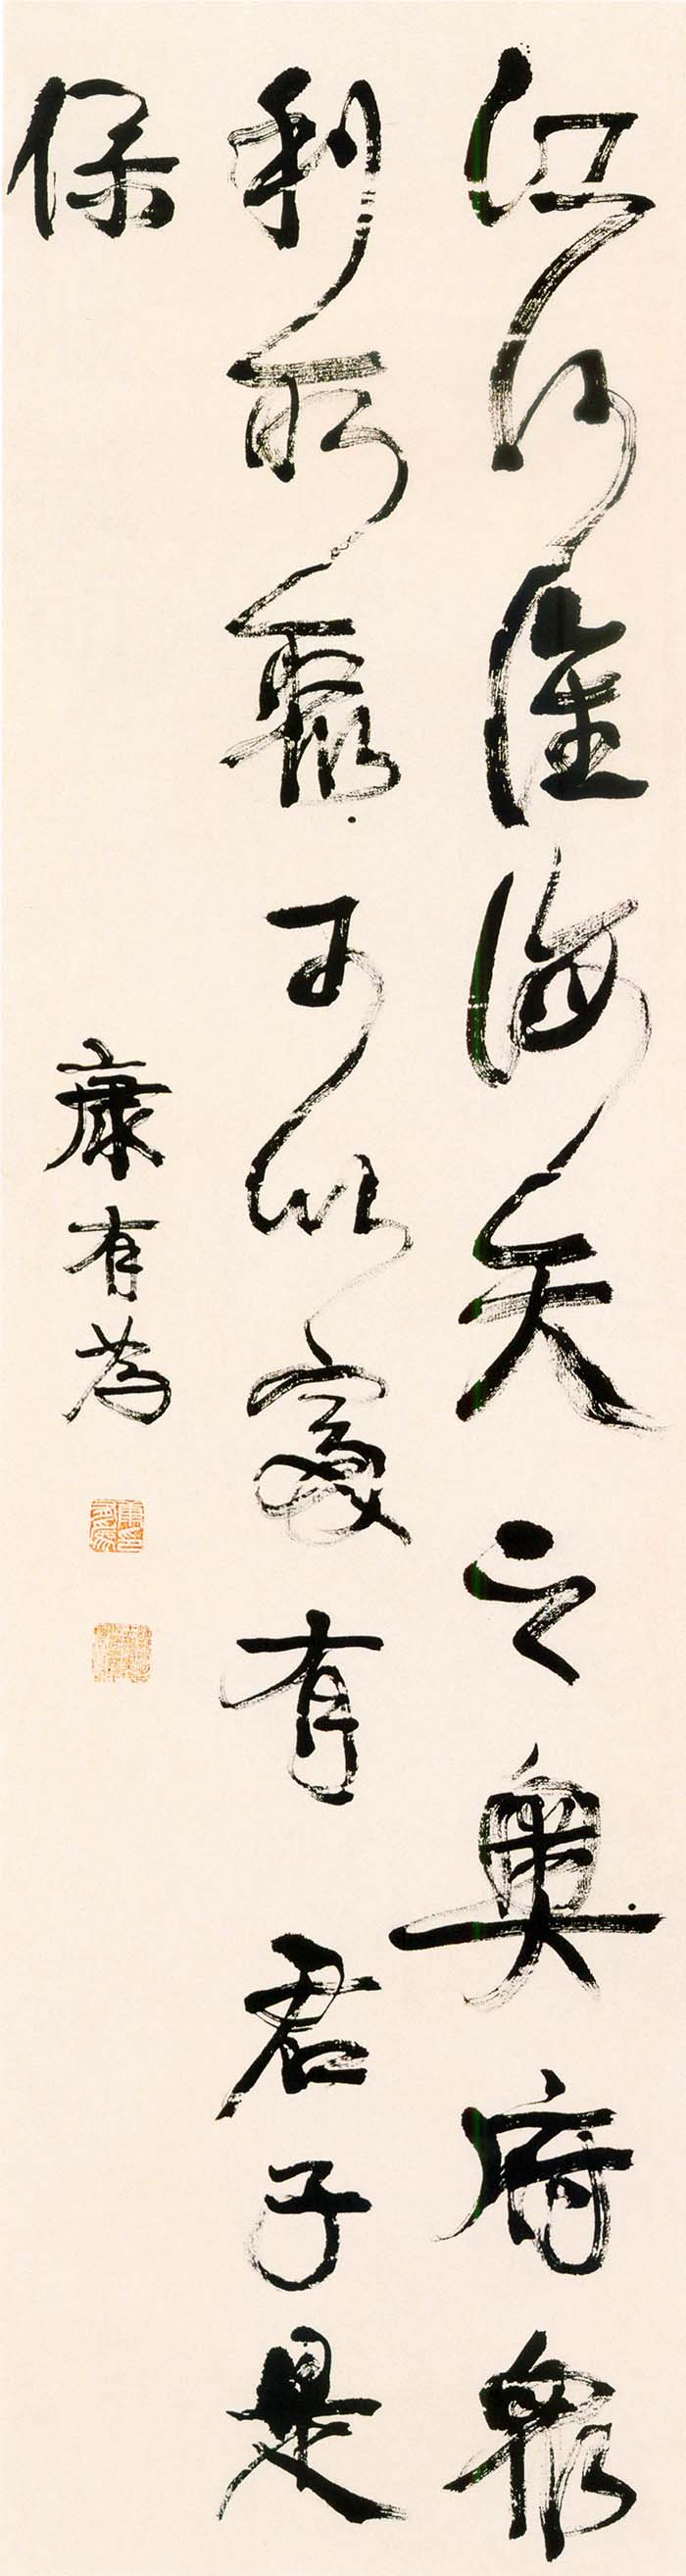 康有为《行书易林语摘轴》-山西省博物馆藏(图1)